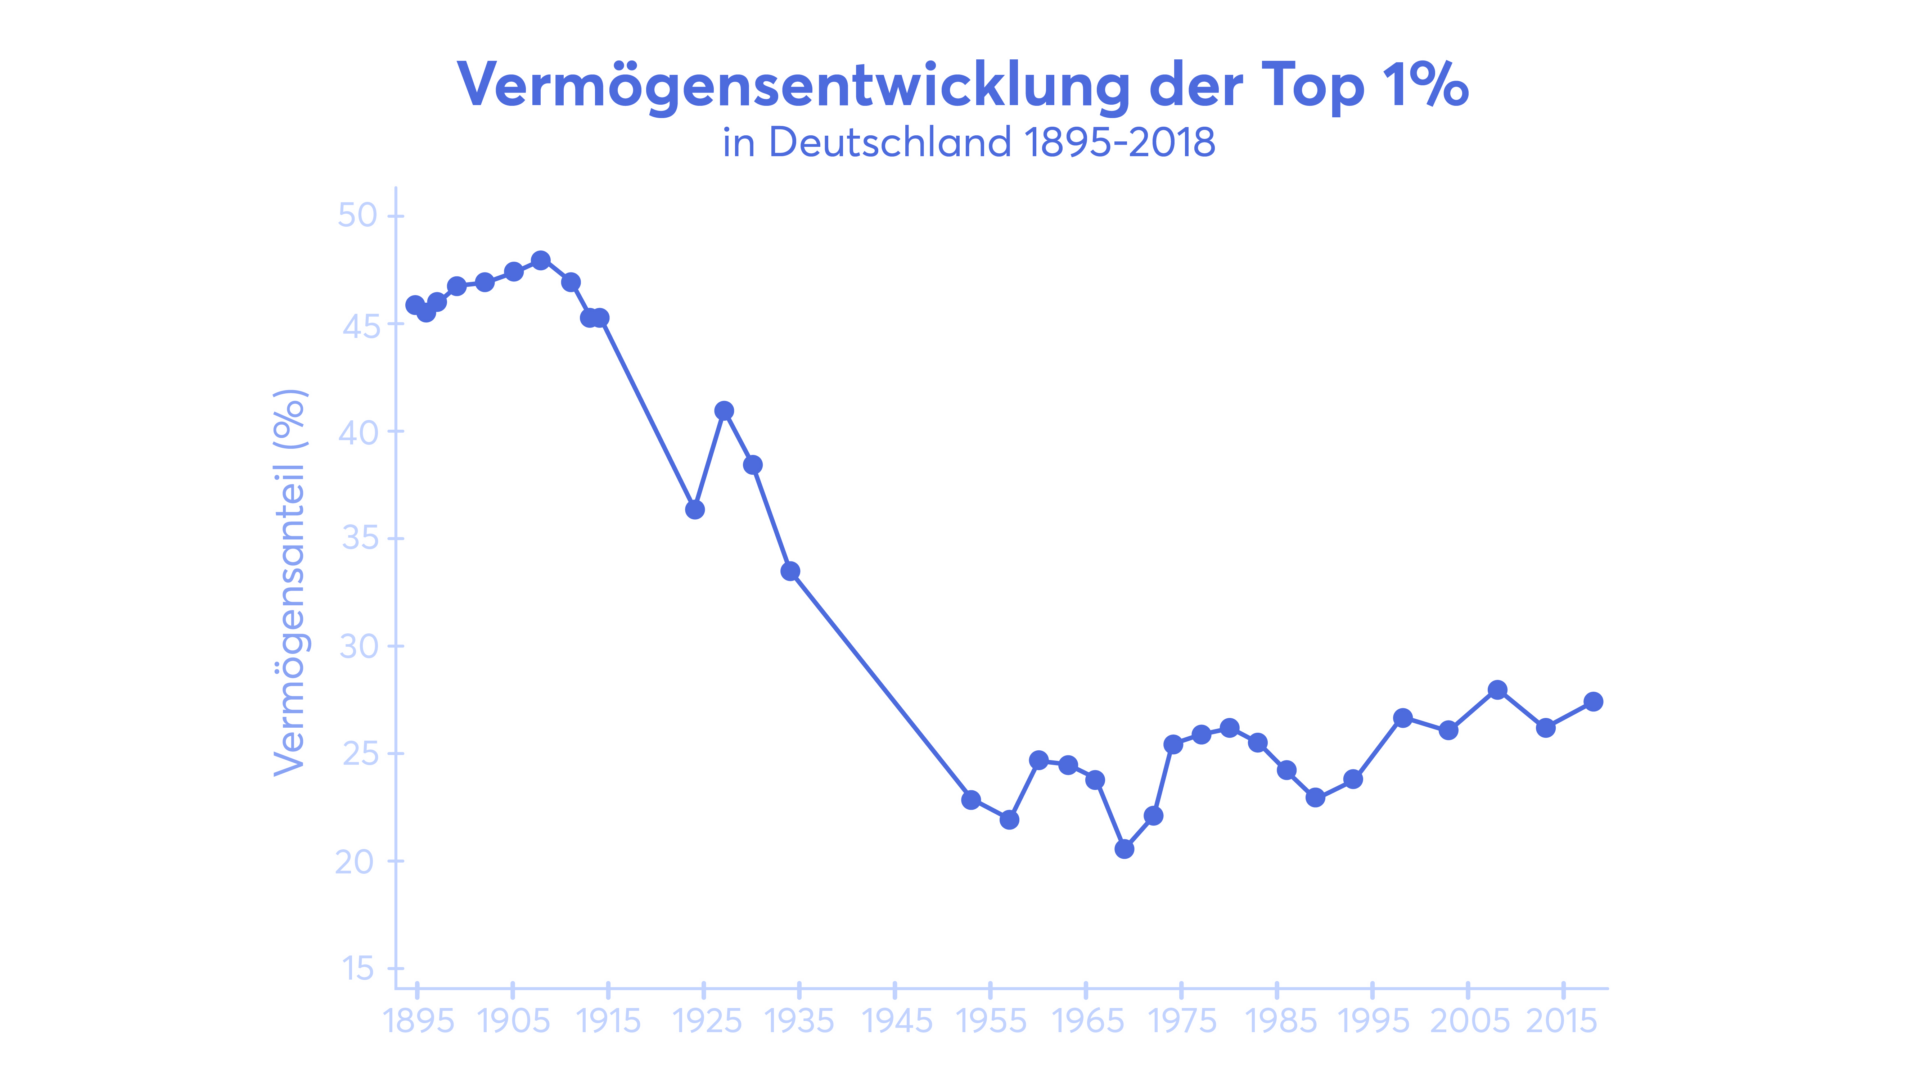 Vermögensentwicklung der Top 1% in Deutschland